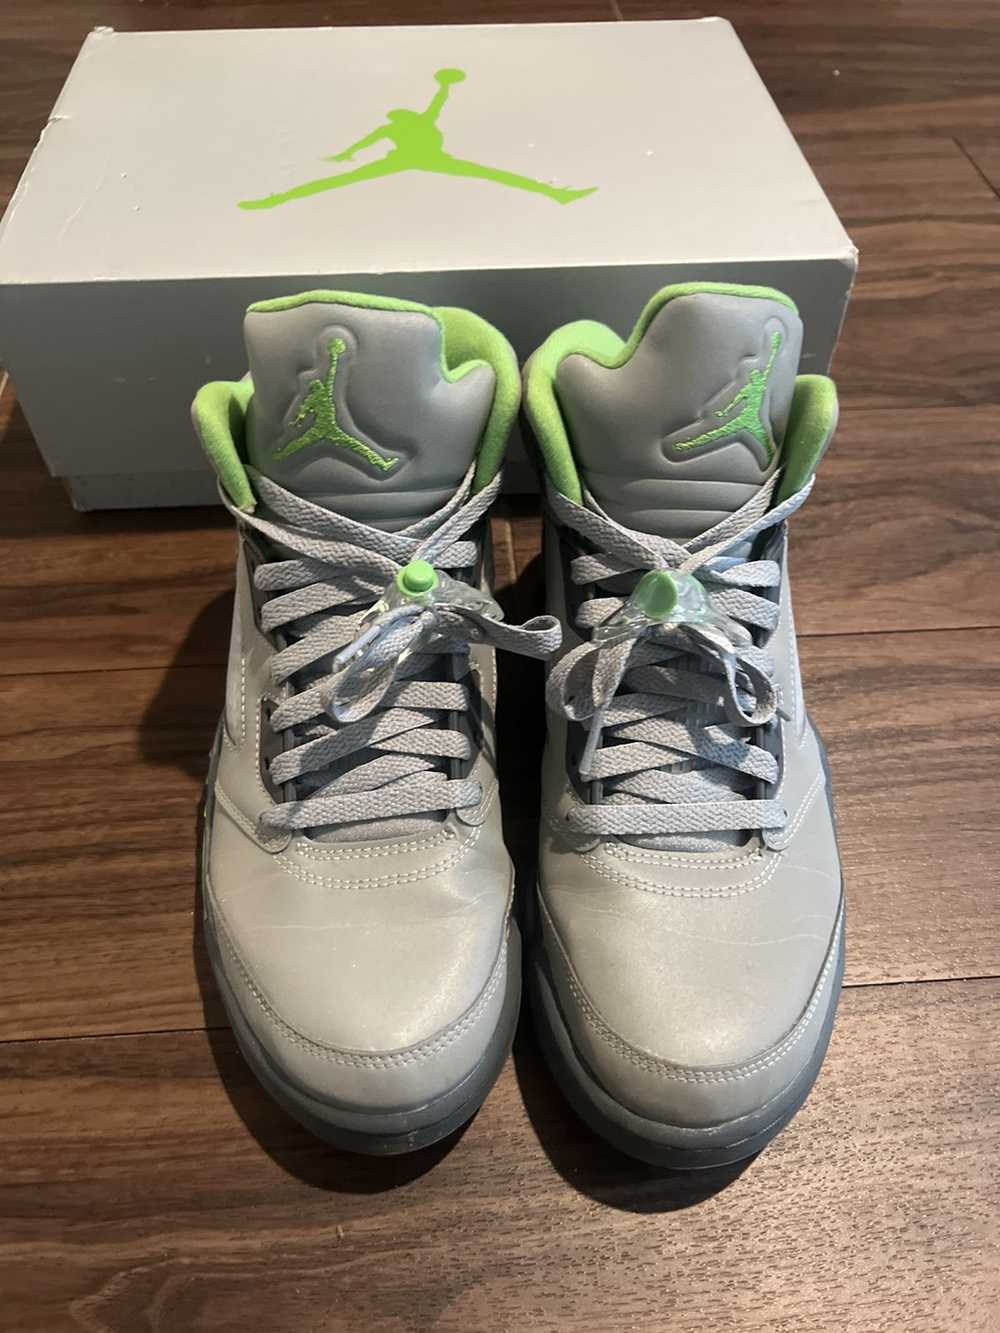 Jordan Brand × Nike Jordan 5 Retro “Green Bean” - image 4